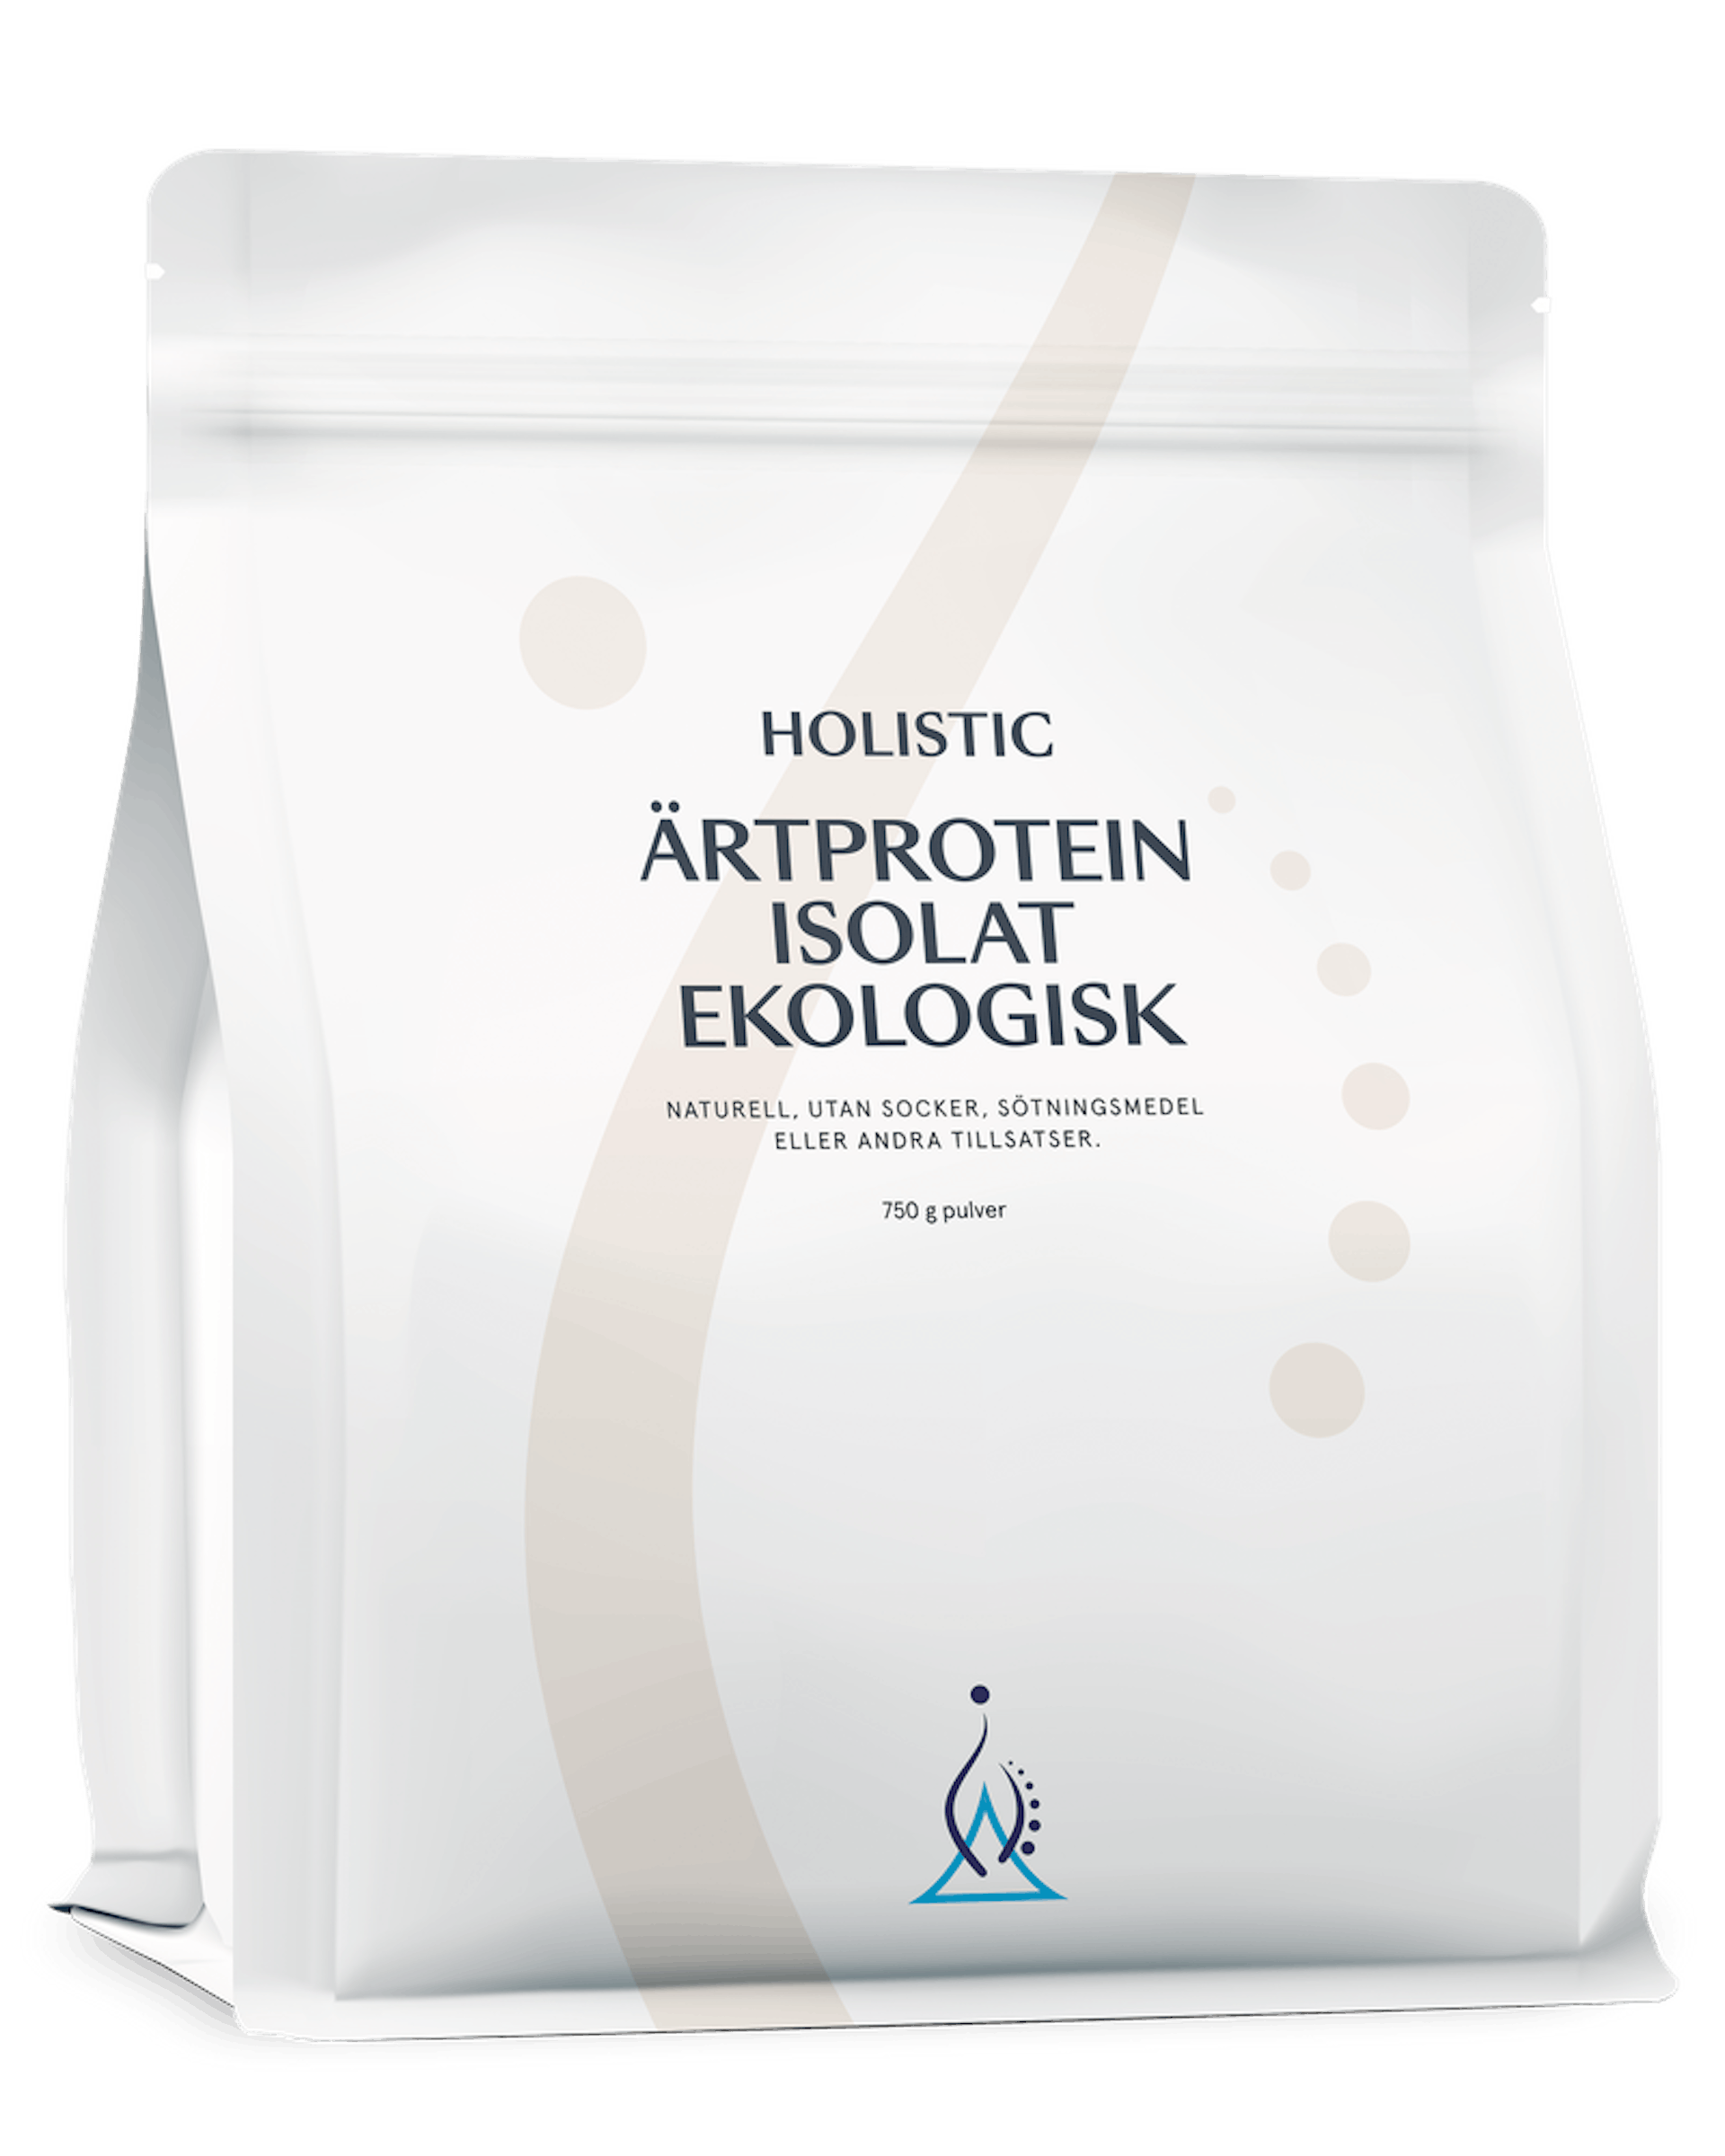 Ärtproteinisolat ekologisk, 750 g (1 av 1)